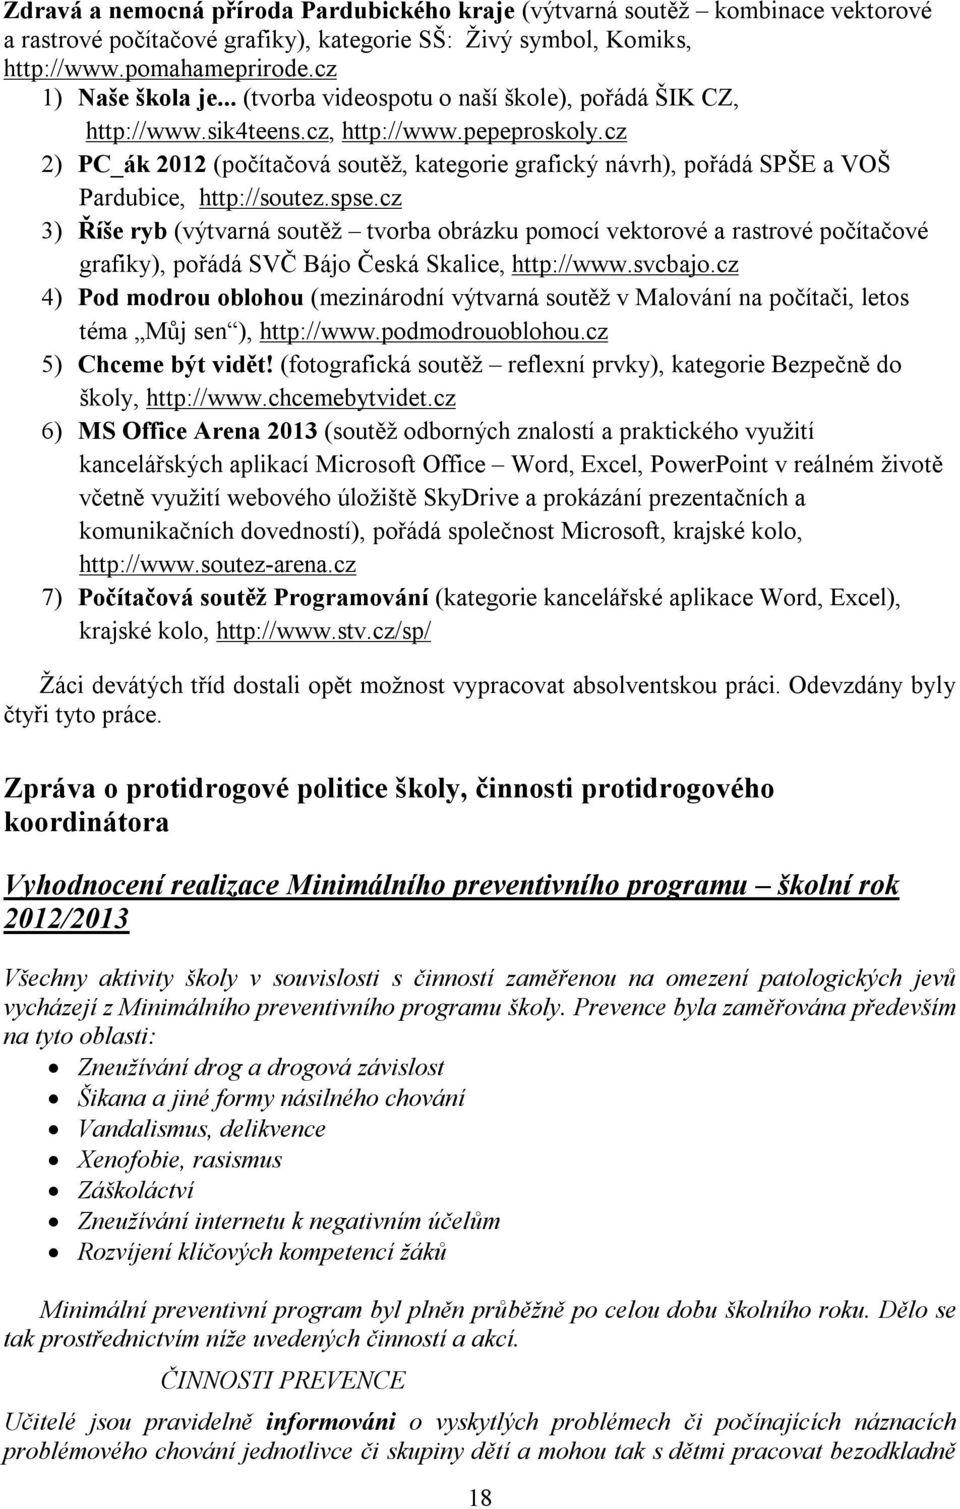 cz 2) PC_ák 2012 (počítačová soutěž, kategorie grafický návrh), pořádá SPŠE a VOŠ Pardubice, http://soutez.spse.